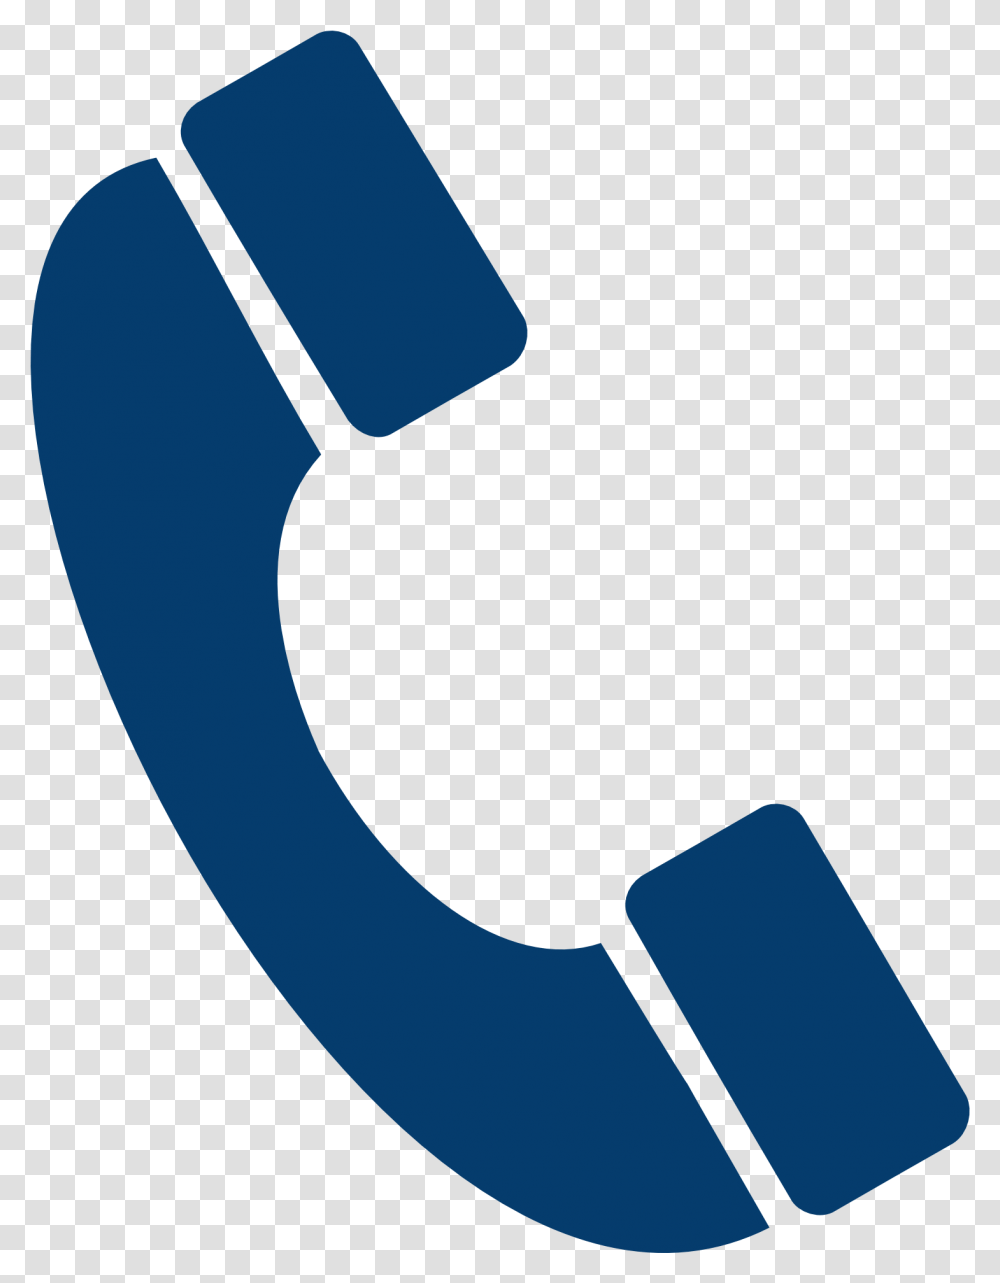 Phone Call Logo 6 Image Phone Call Hd Logo, Text, Number, Symbol, Alphabet Transparent Png